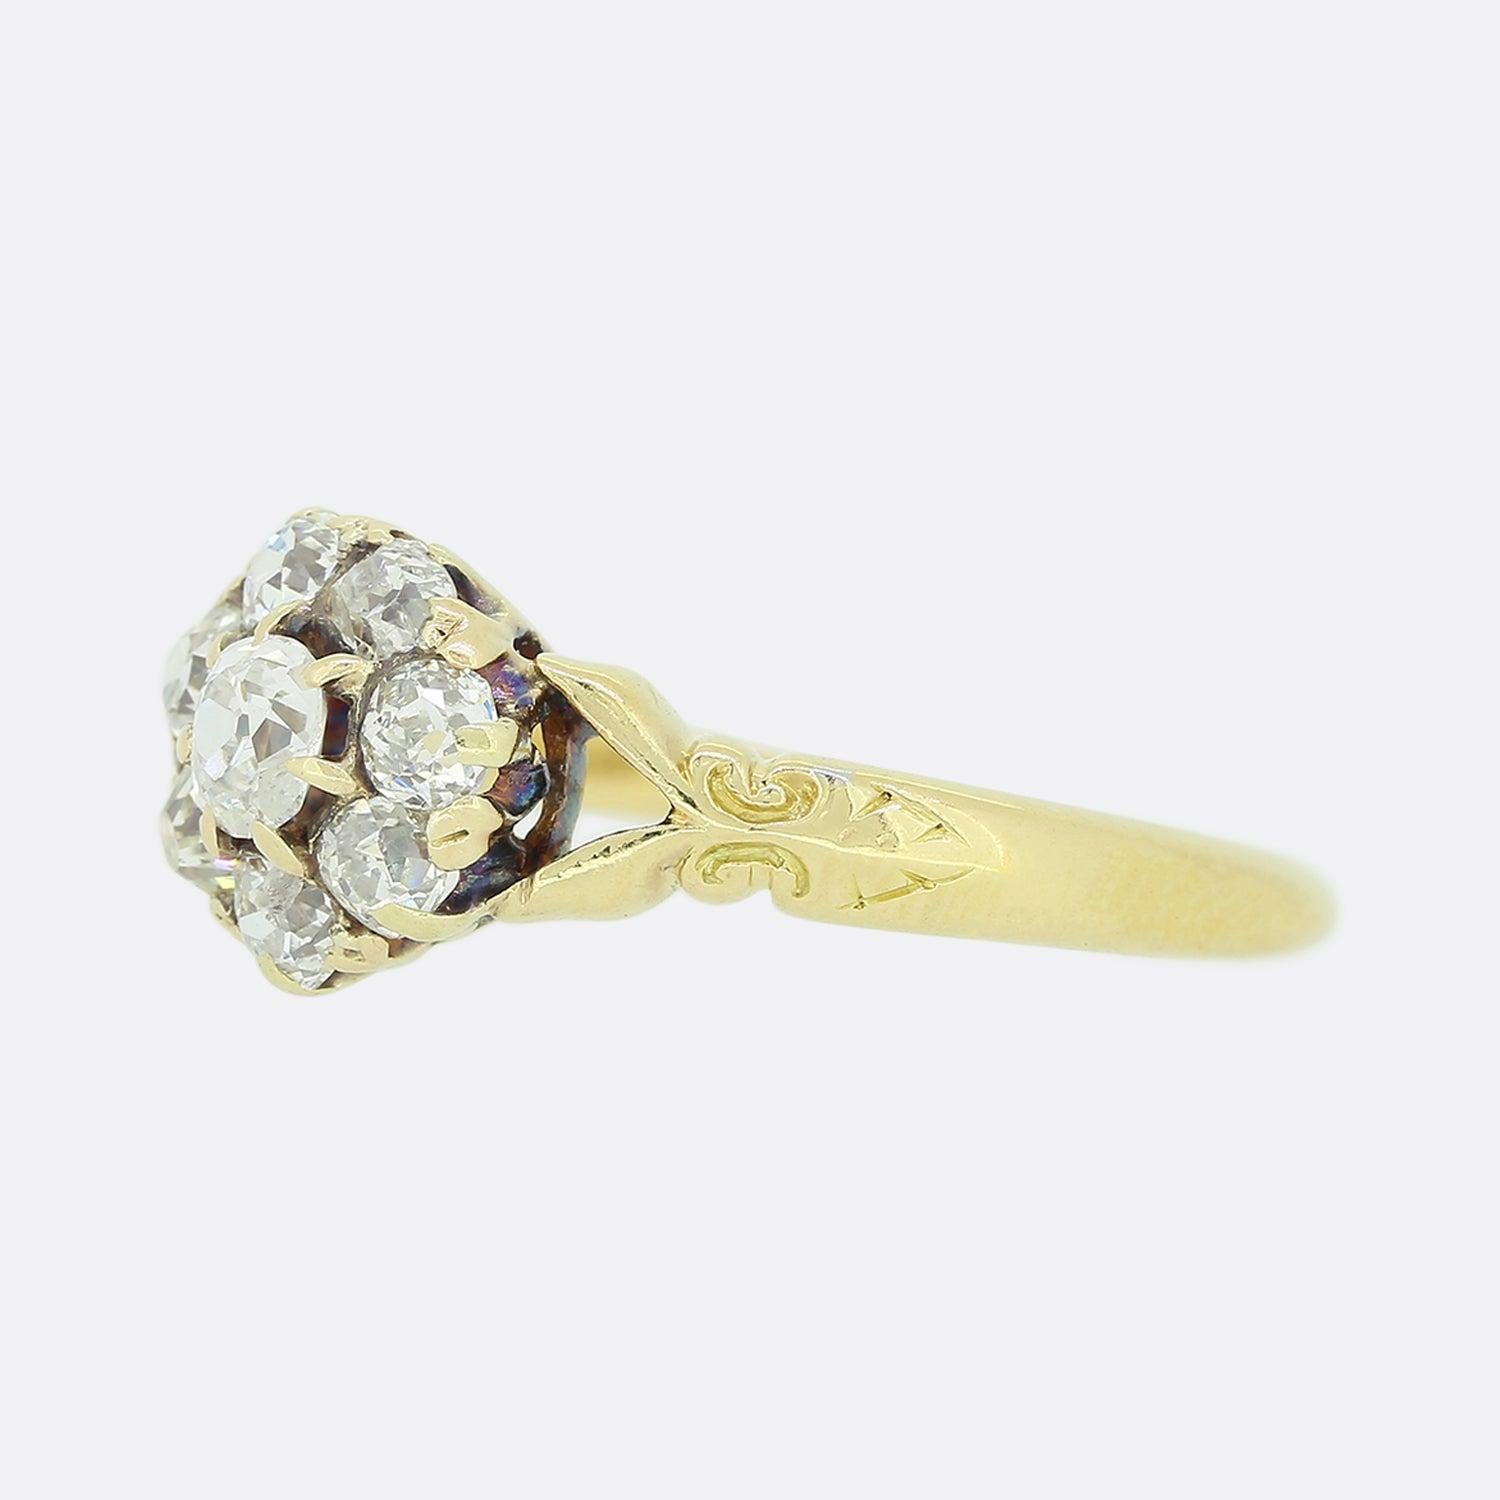 Dies ist eine viktorianische 18ct Gelbgold Diamant Gänseblümchen Ring. Der Ring beherbergt eine Gruppe von Diamanten im Altschliff, die einen etwas größeren ovalen Stein in der Mitte umschließen. Jeder Diamant ist in Krallen gefasst und sitzt